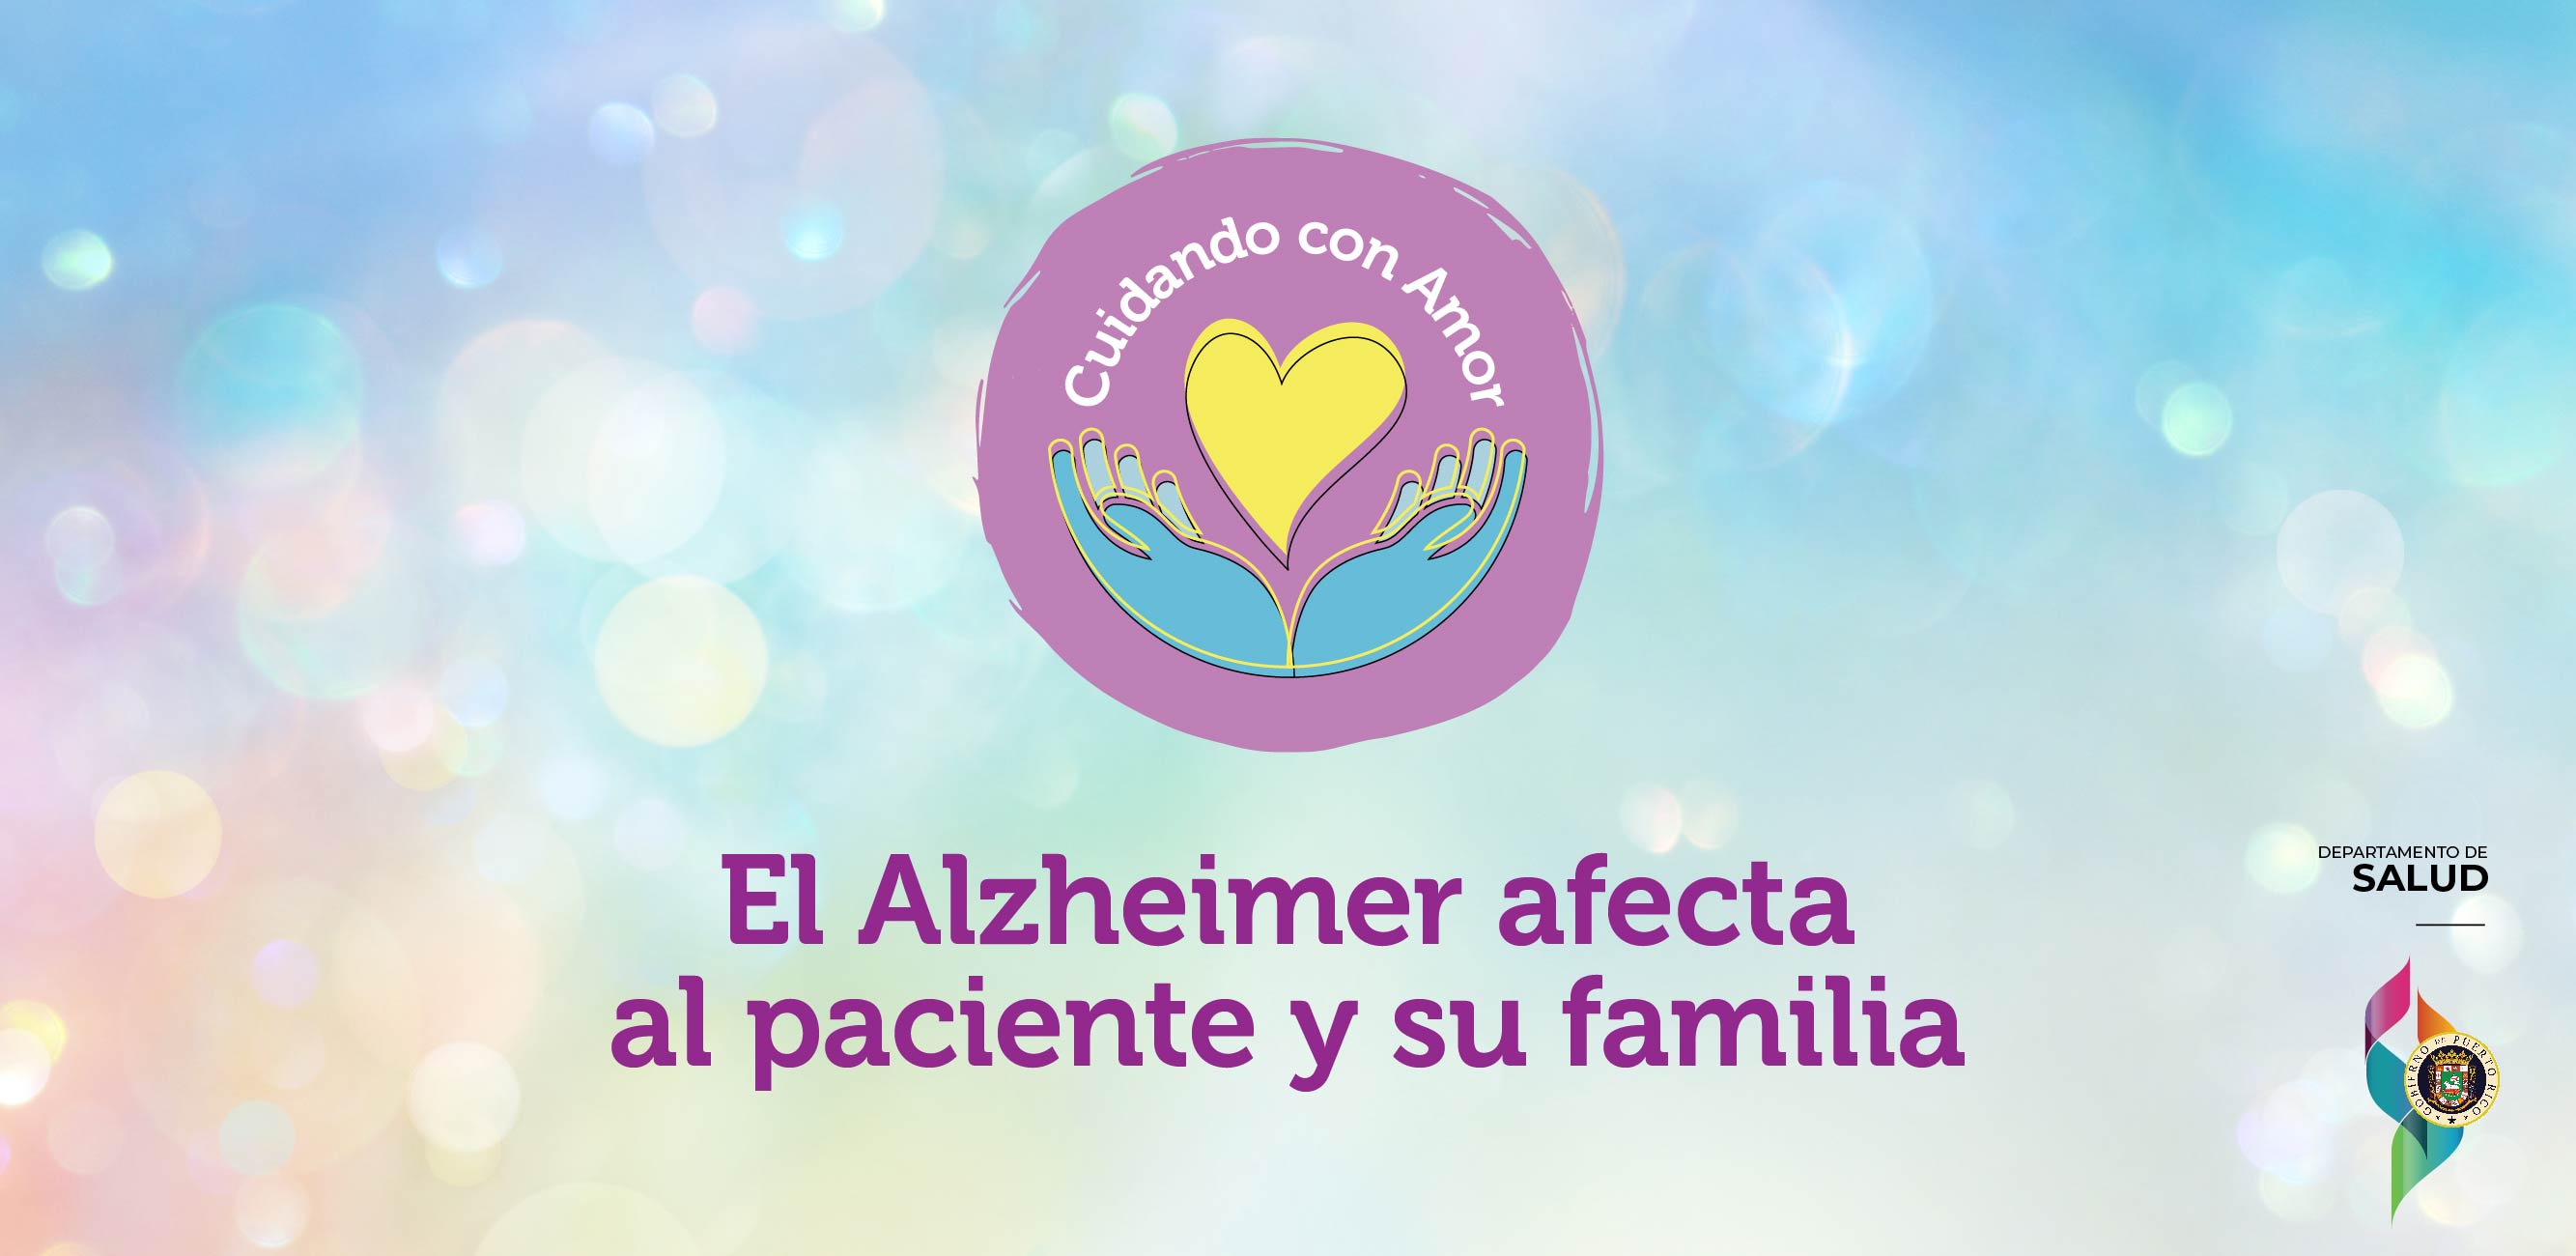 .El Alzheimer afecta al paciente y su familia